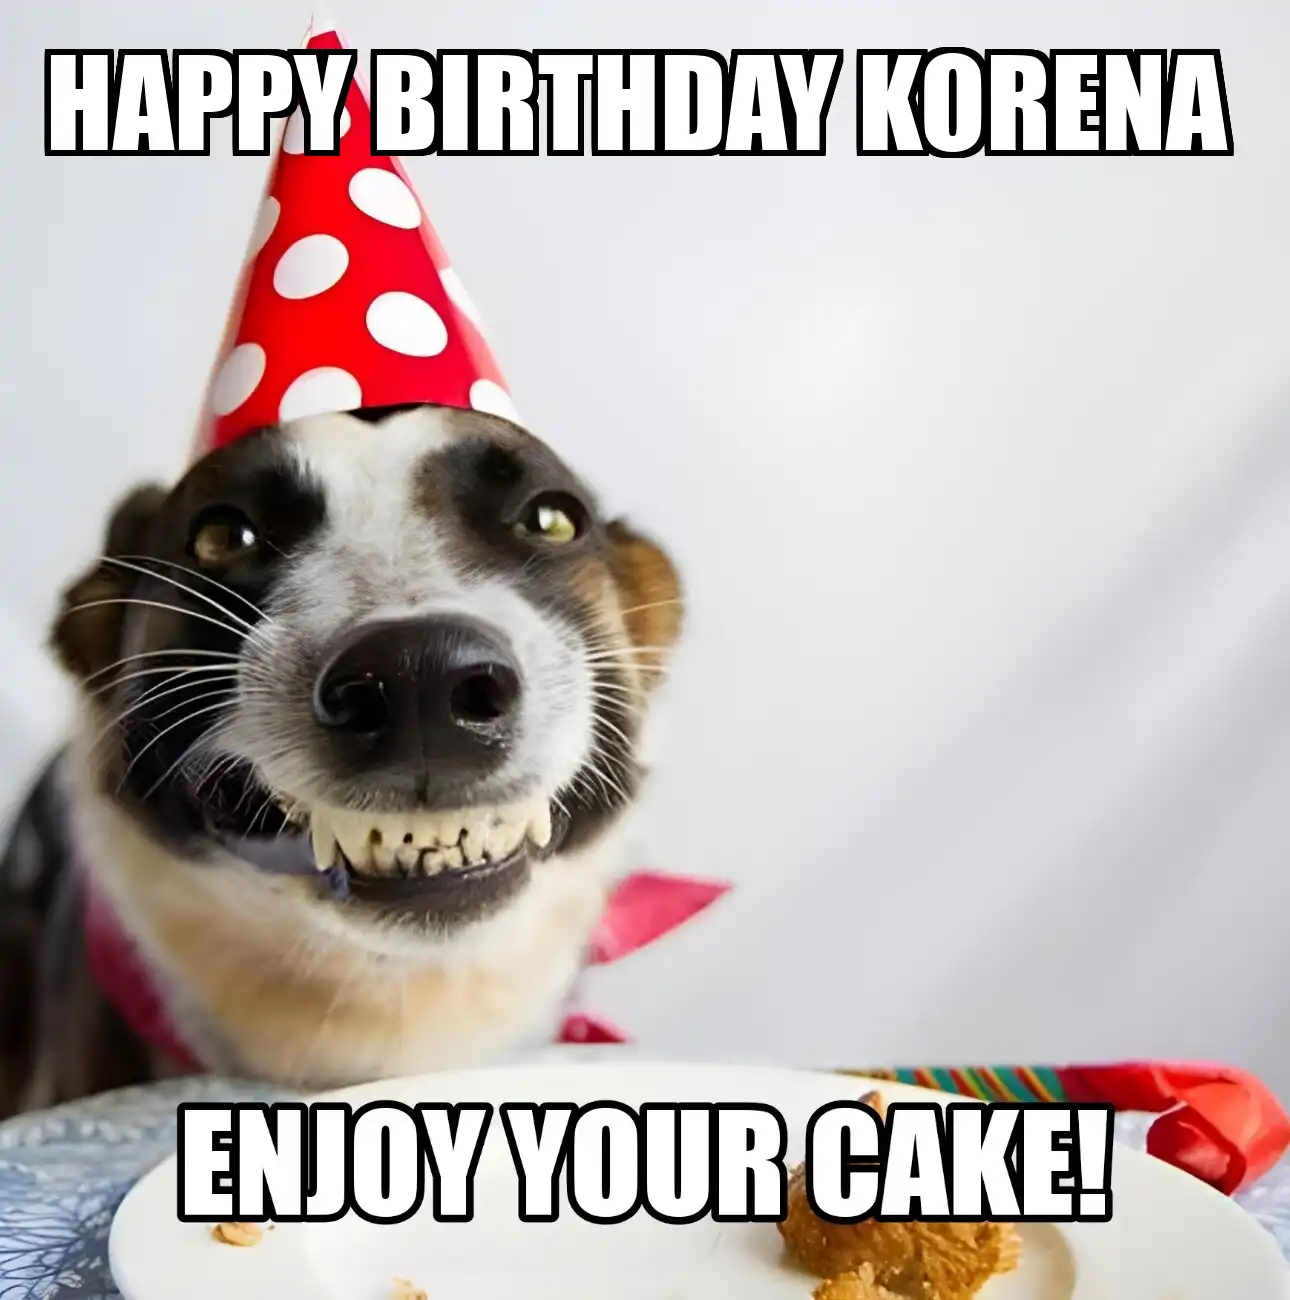 Happy Birthday Korena Enjoy Your Cake Dog Meme